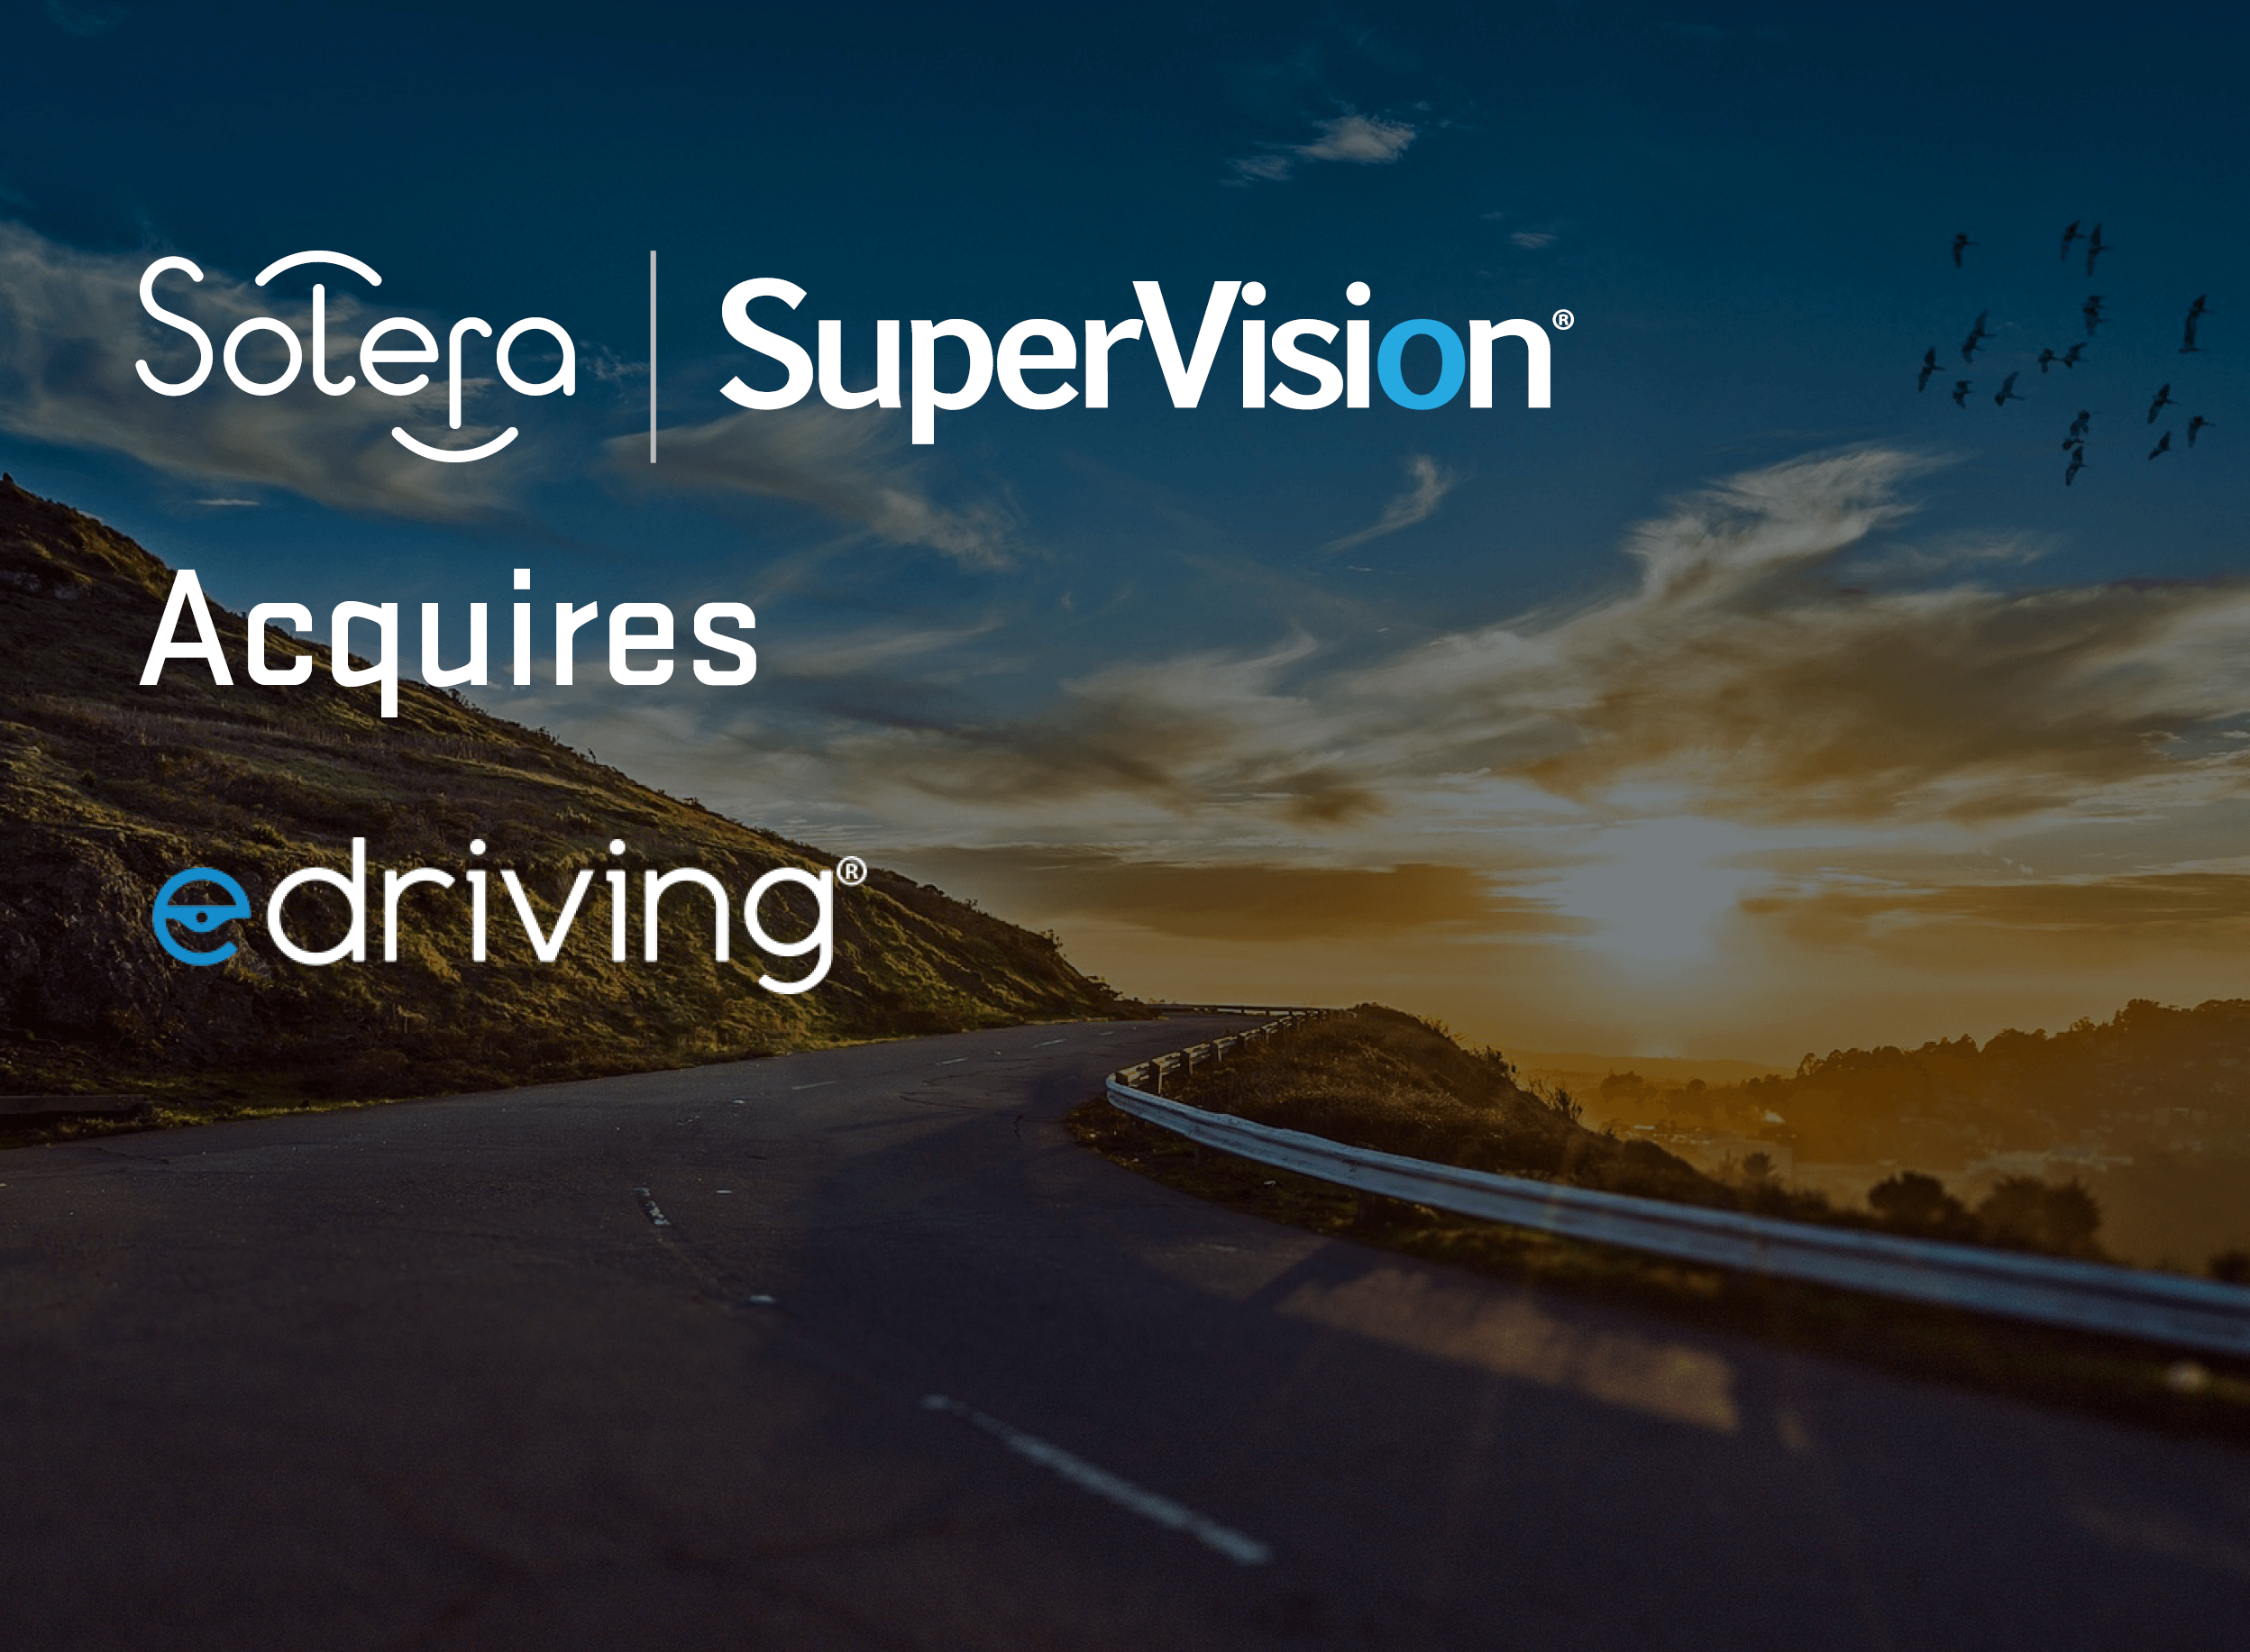 Solera | SuperVision acquires edriving